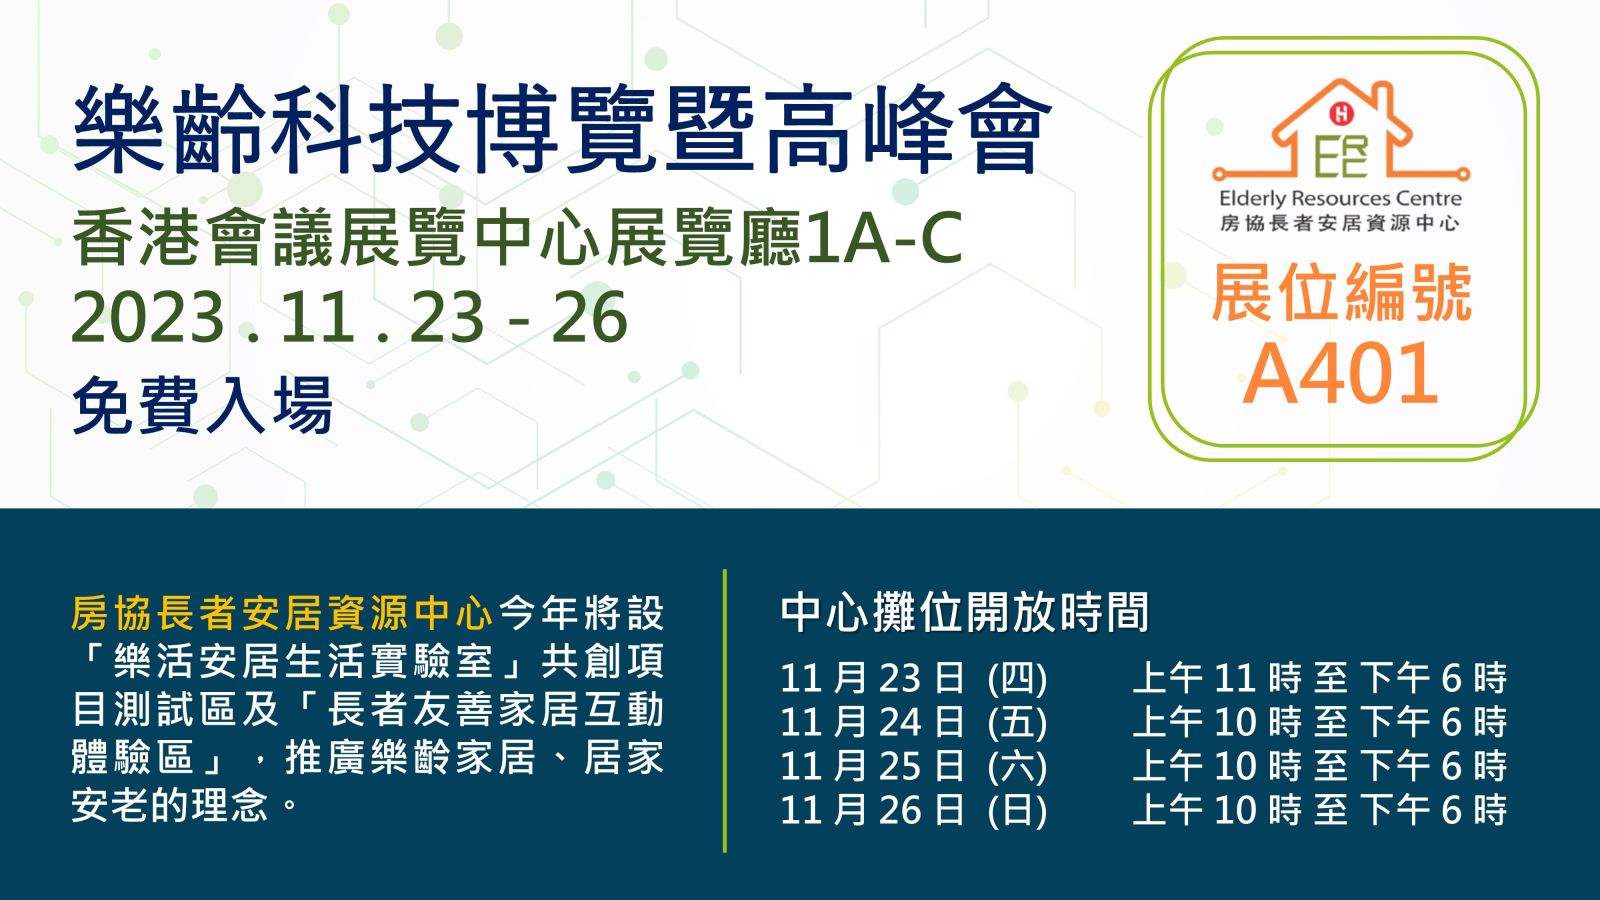 2023-11-15 中心參與樂齡科技博覽暨高峰會2023